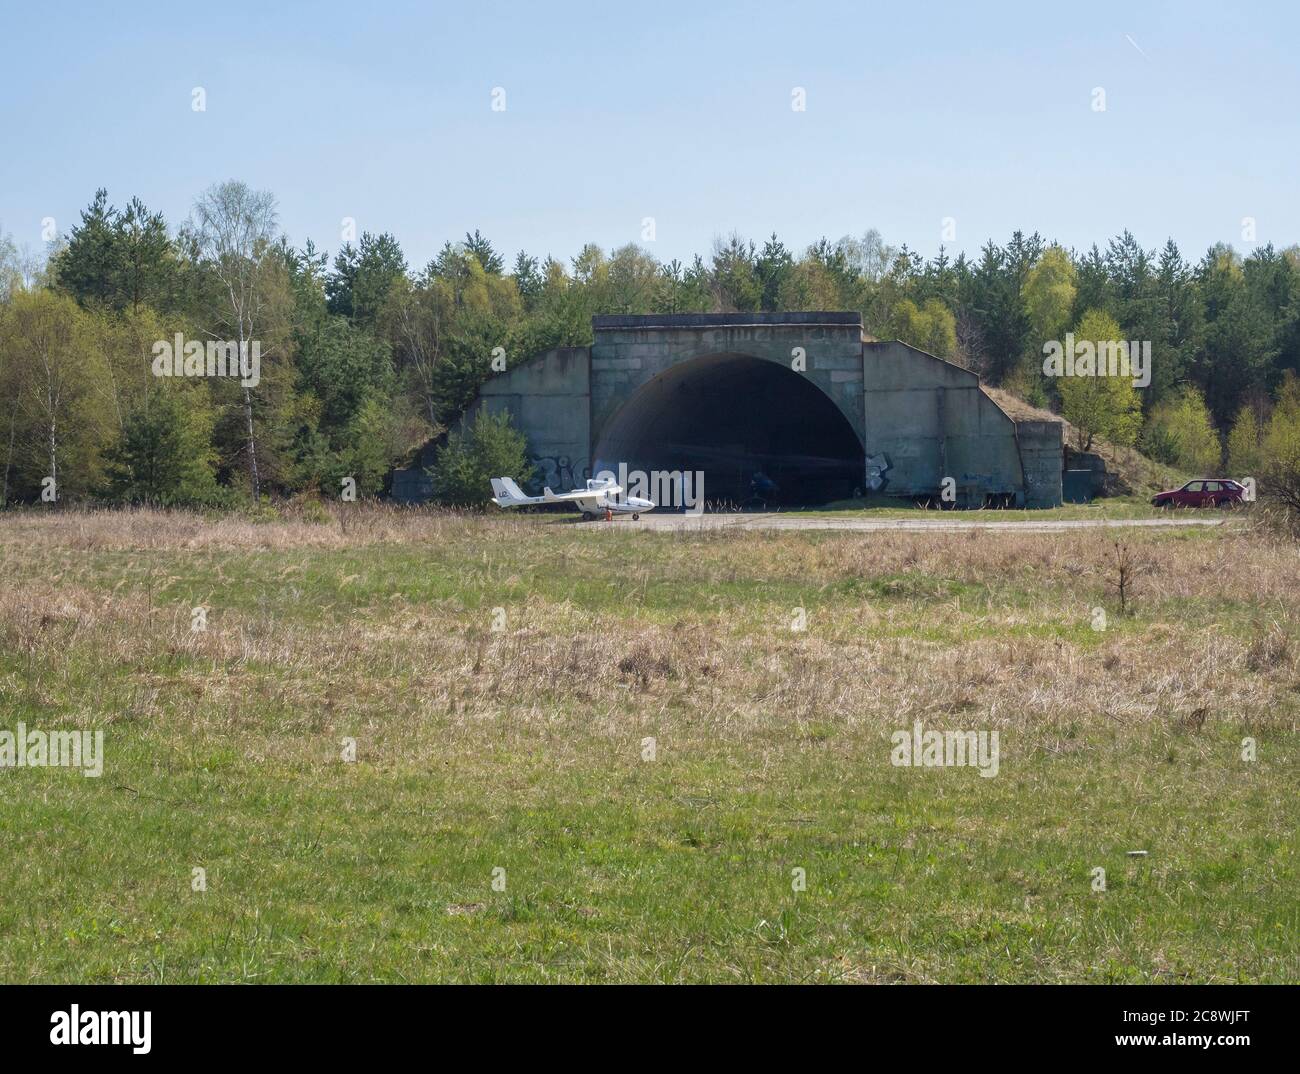 Repubblica Ceca, Ralsko, 26 aprile 2019: Ex esercito sovietico riparo in cemento, che serve come hangar in aeroporto a ex addestramento militare rang nella zona Foto Stock